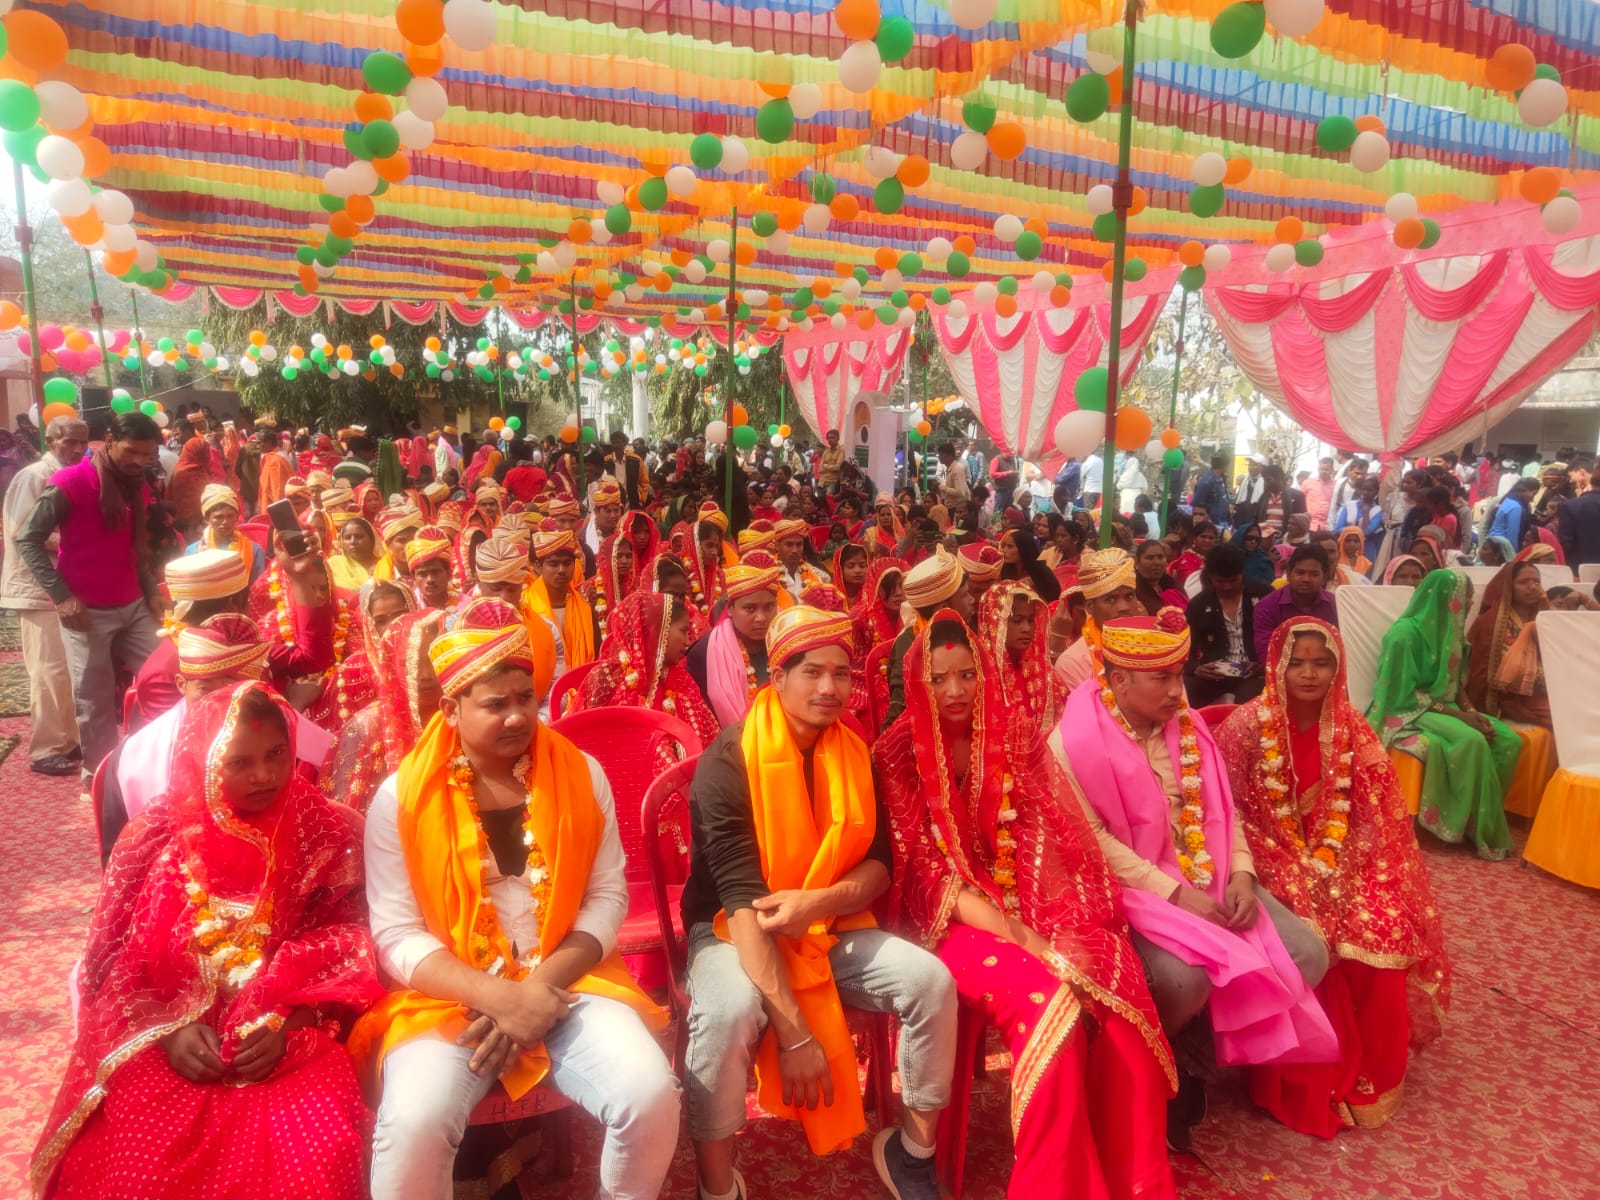 मुख्यमंत्री सामूहिक विवाह में 259 जोड़ो का विवाह धार्मिक रीति रिवाज से संपन्न